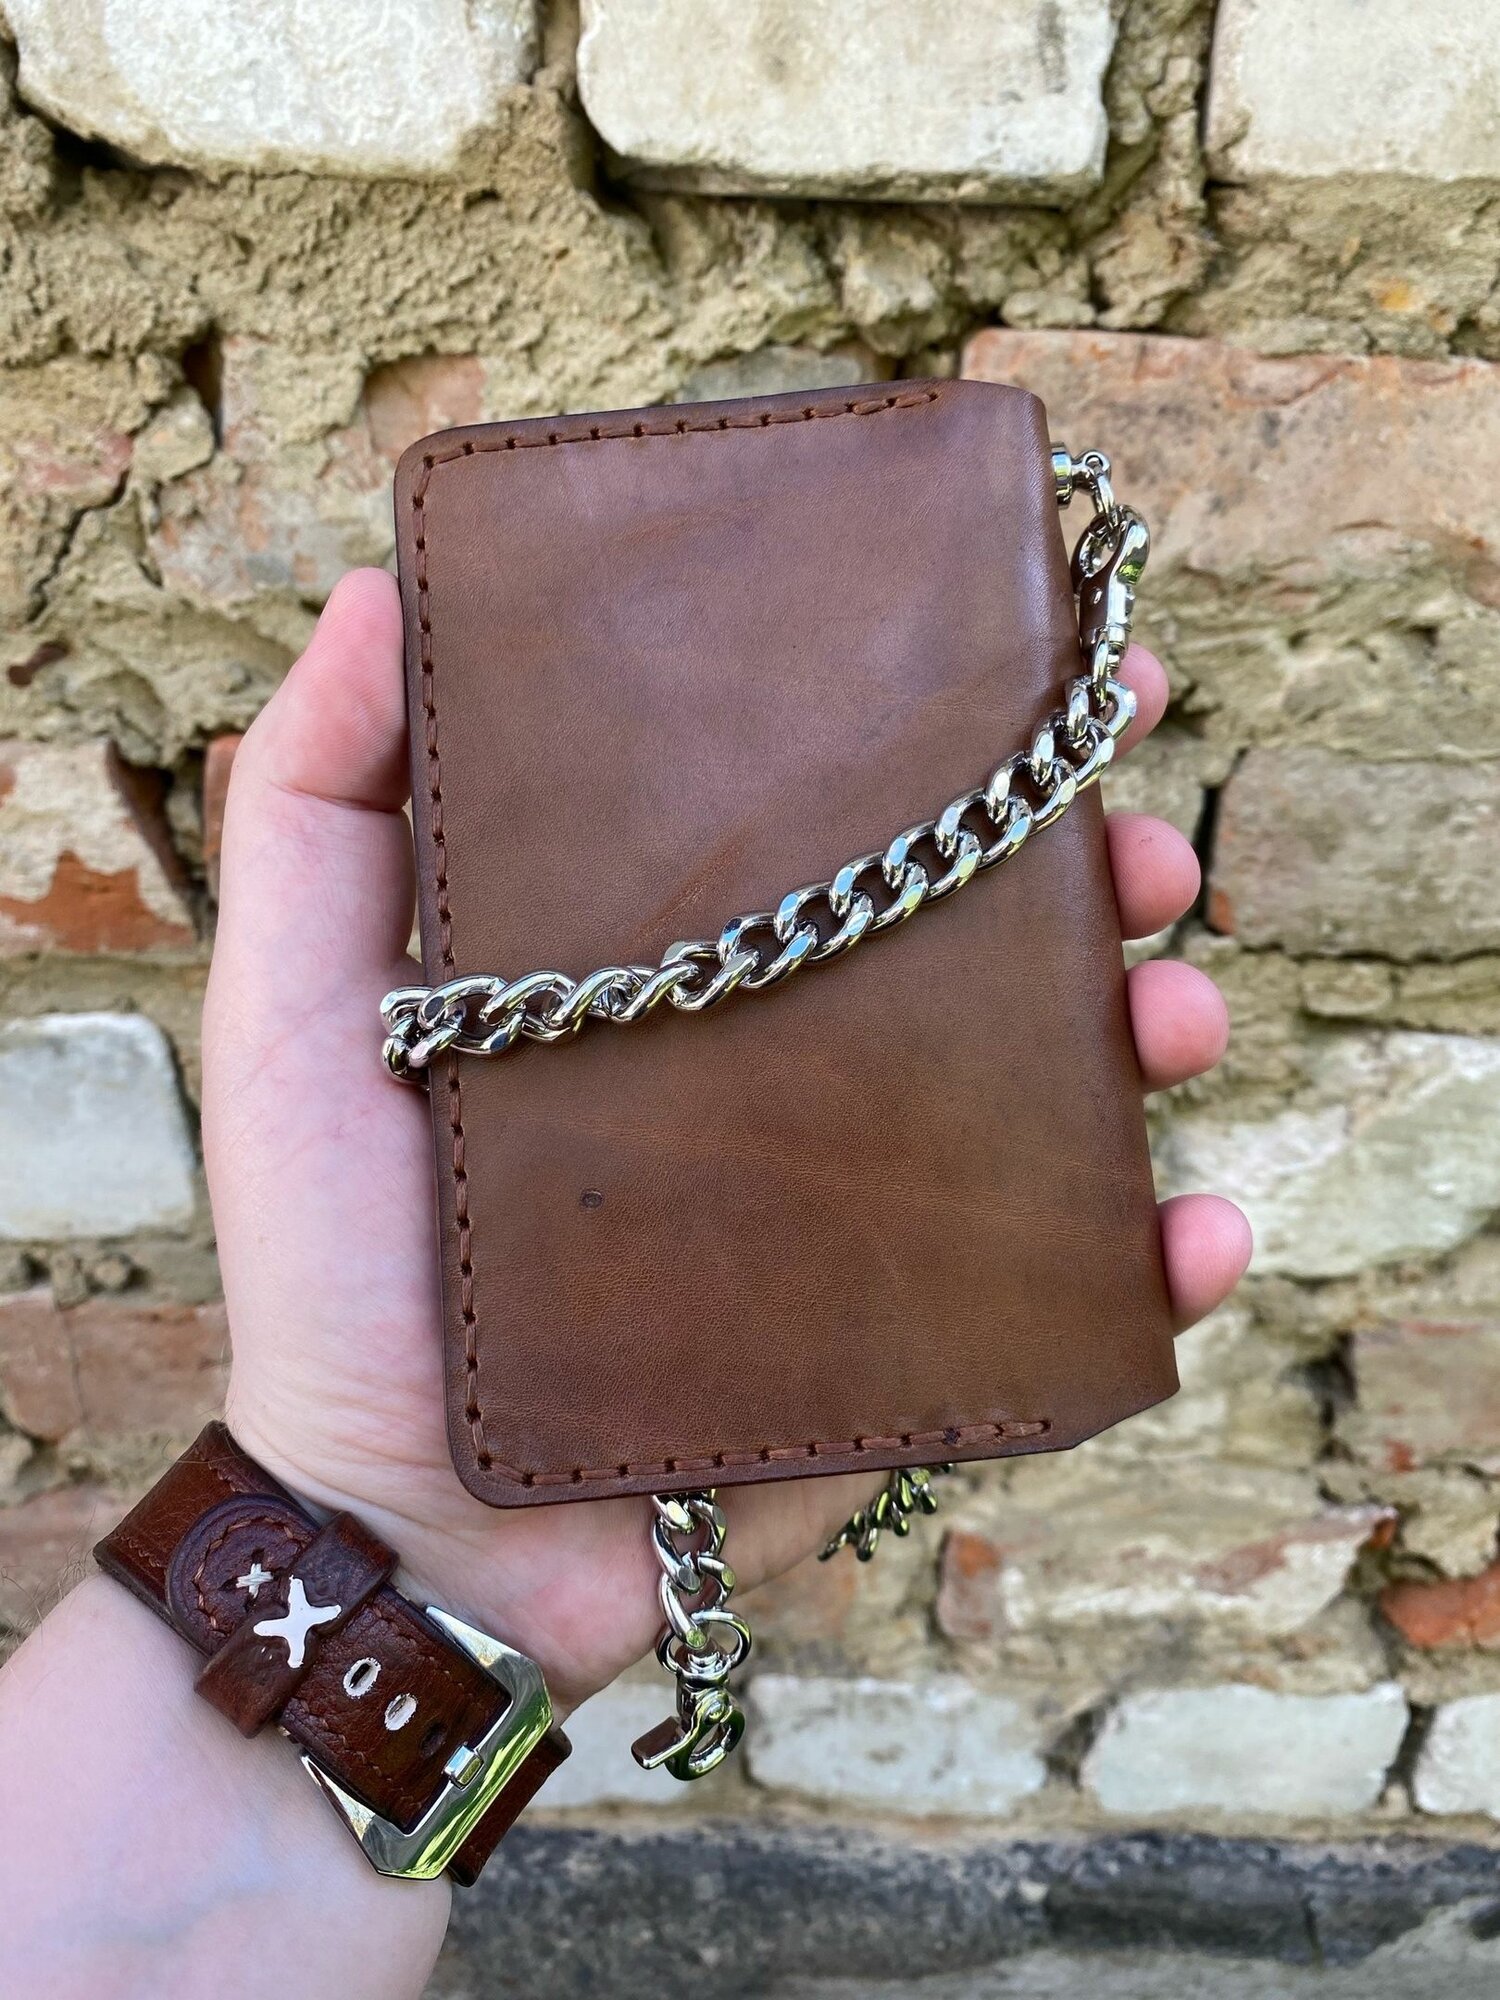 Кошелек SOZDASHEV Hand Made Авторский коричневый кошелек из натуральной кожи с цепью/ Кожаный кошелек ручной работы